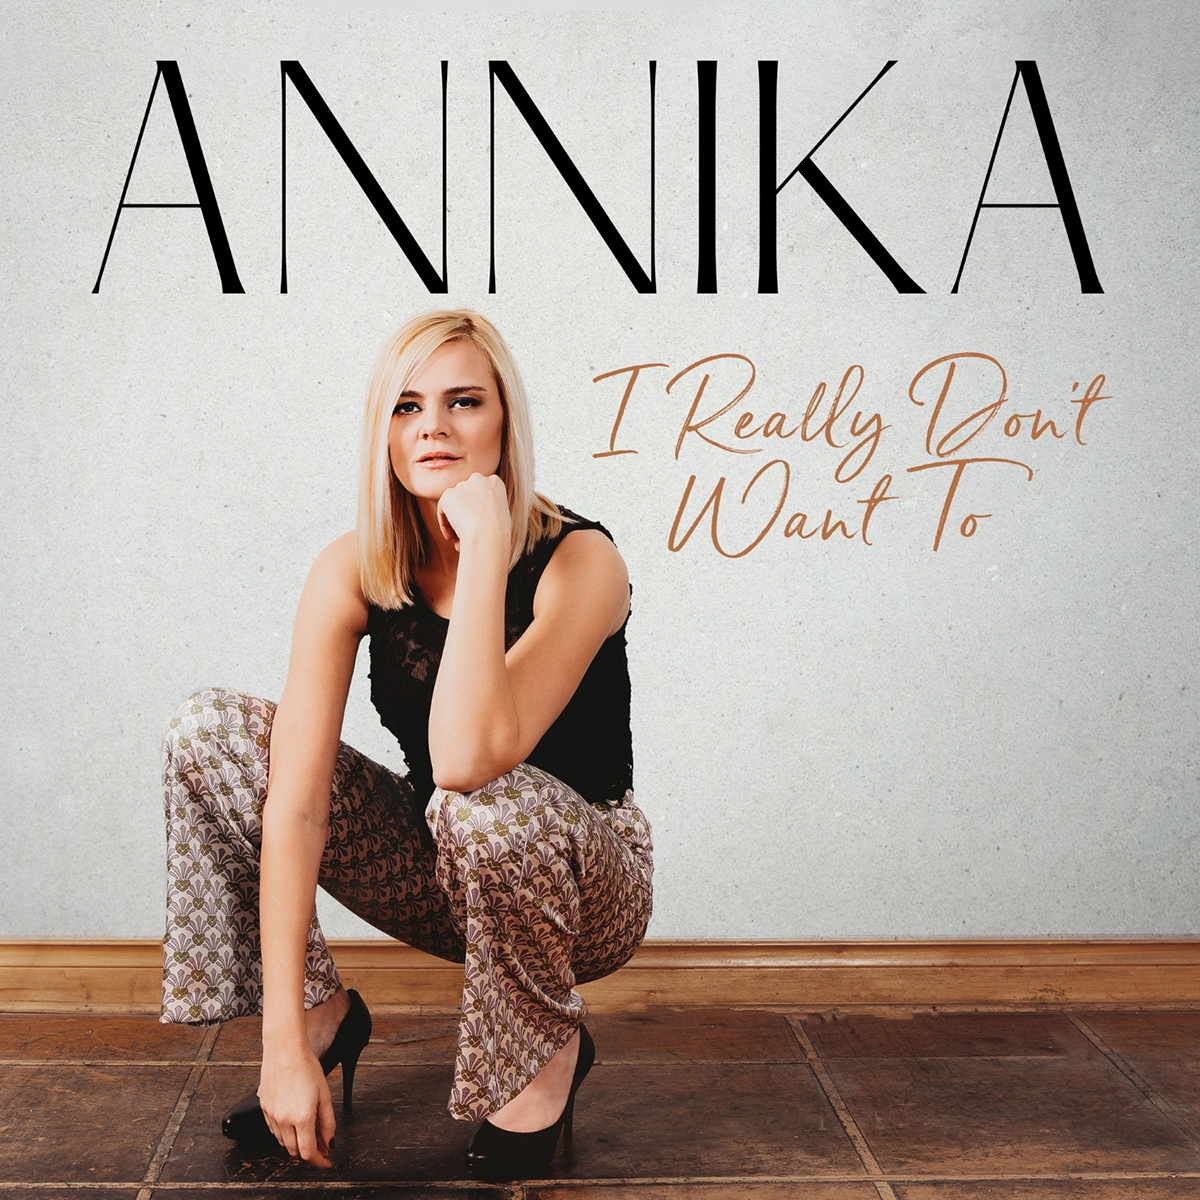 Annika - I Really Don't Want